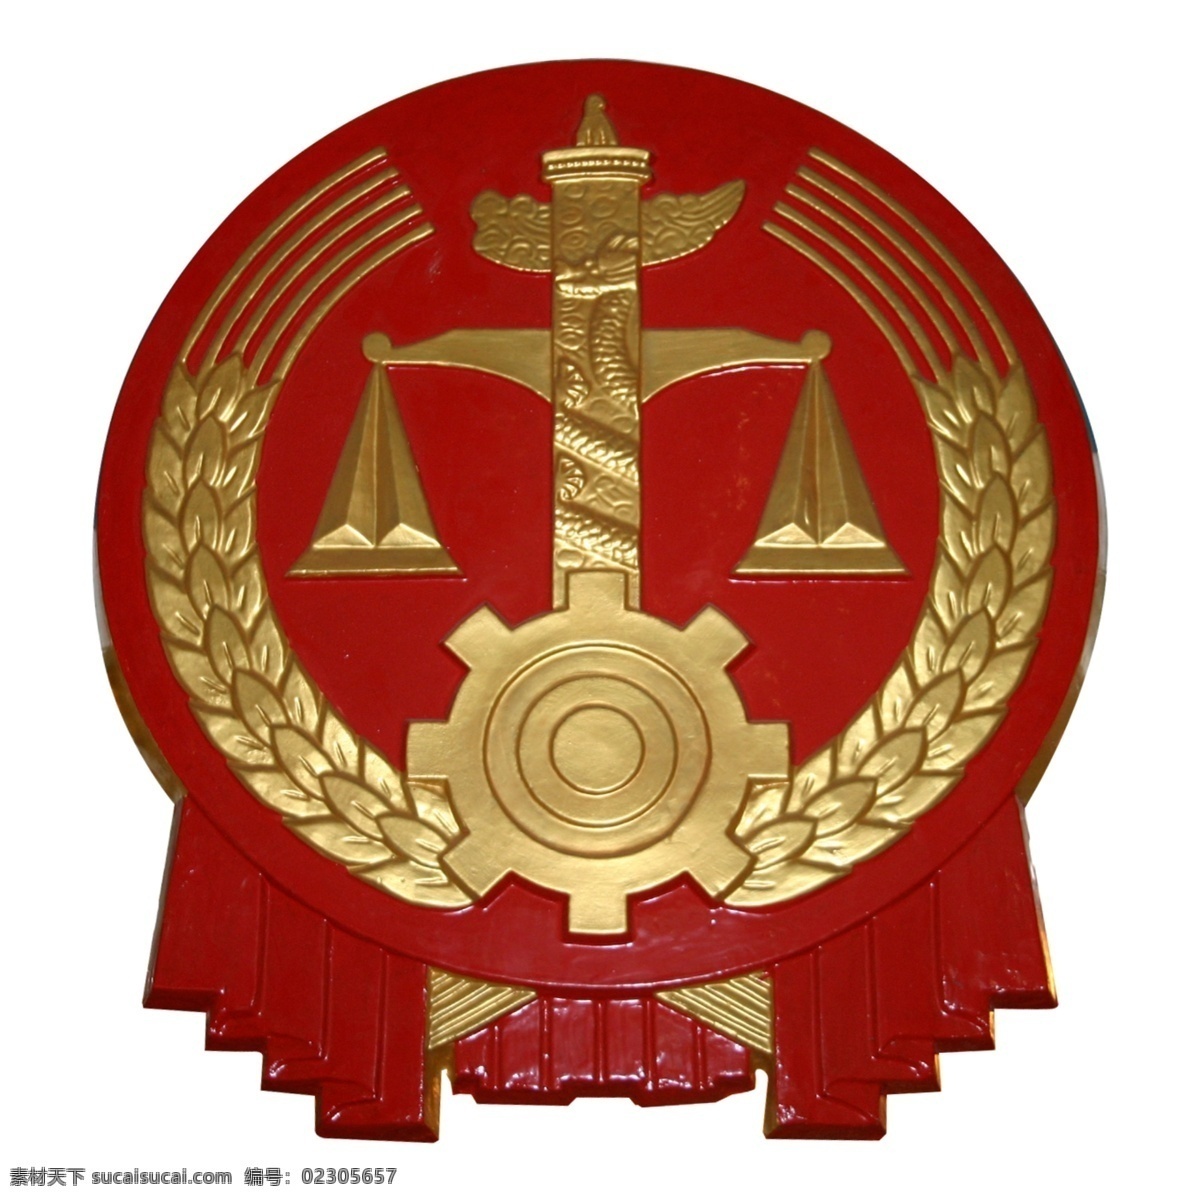 中国政府 标志 类 中国 政府标志 中国政府标志 中国政府类 政府标志类 标志类 公共标识标志 标志图标